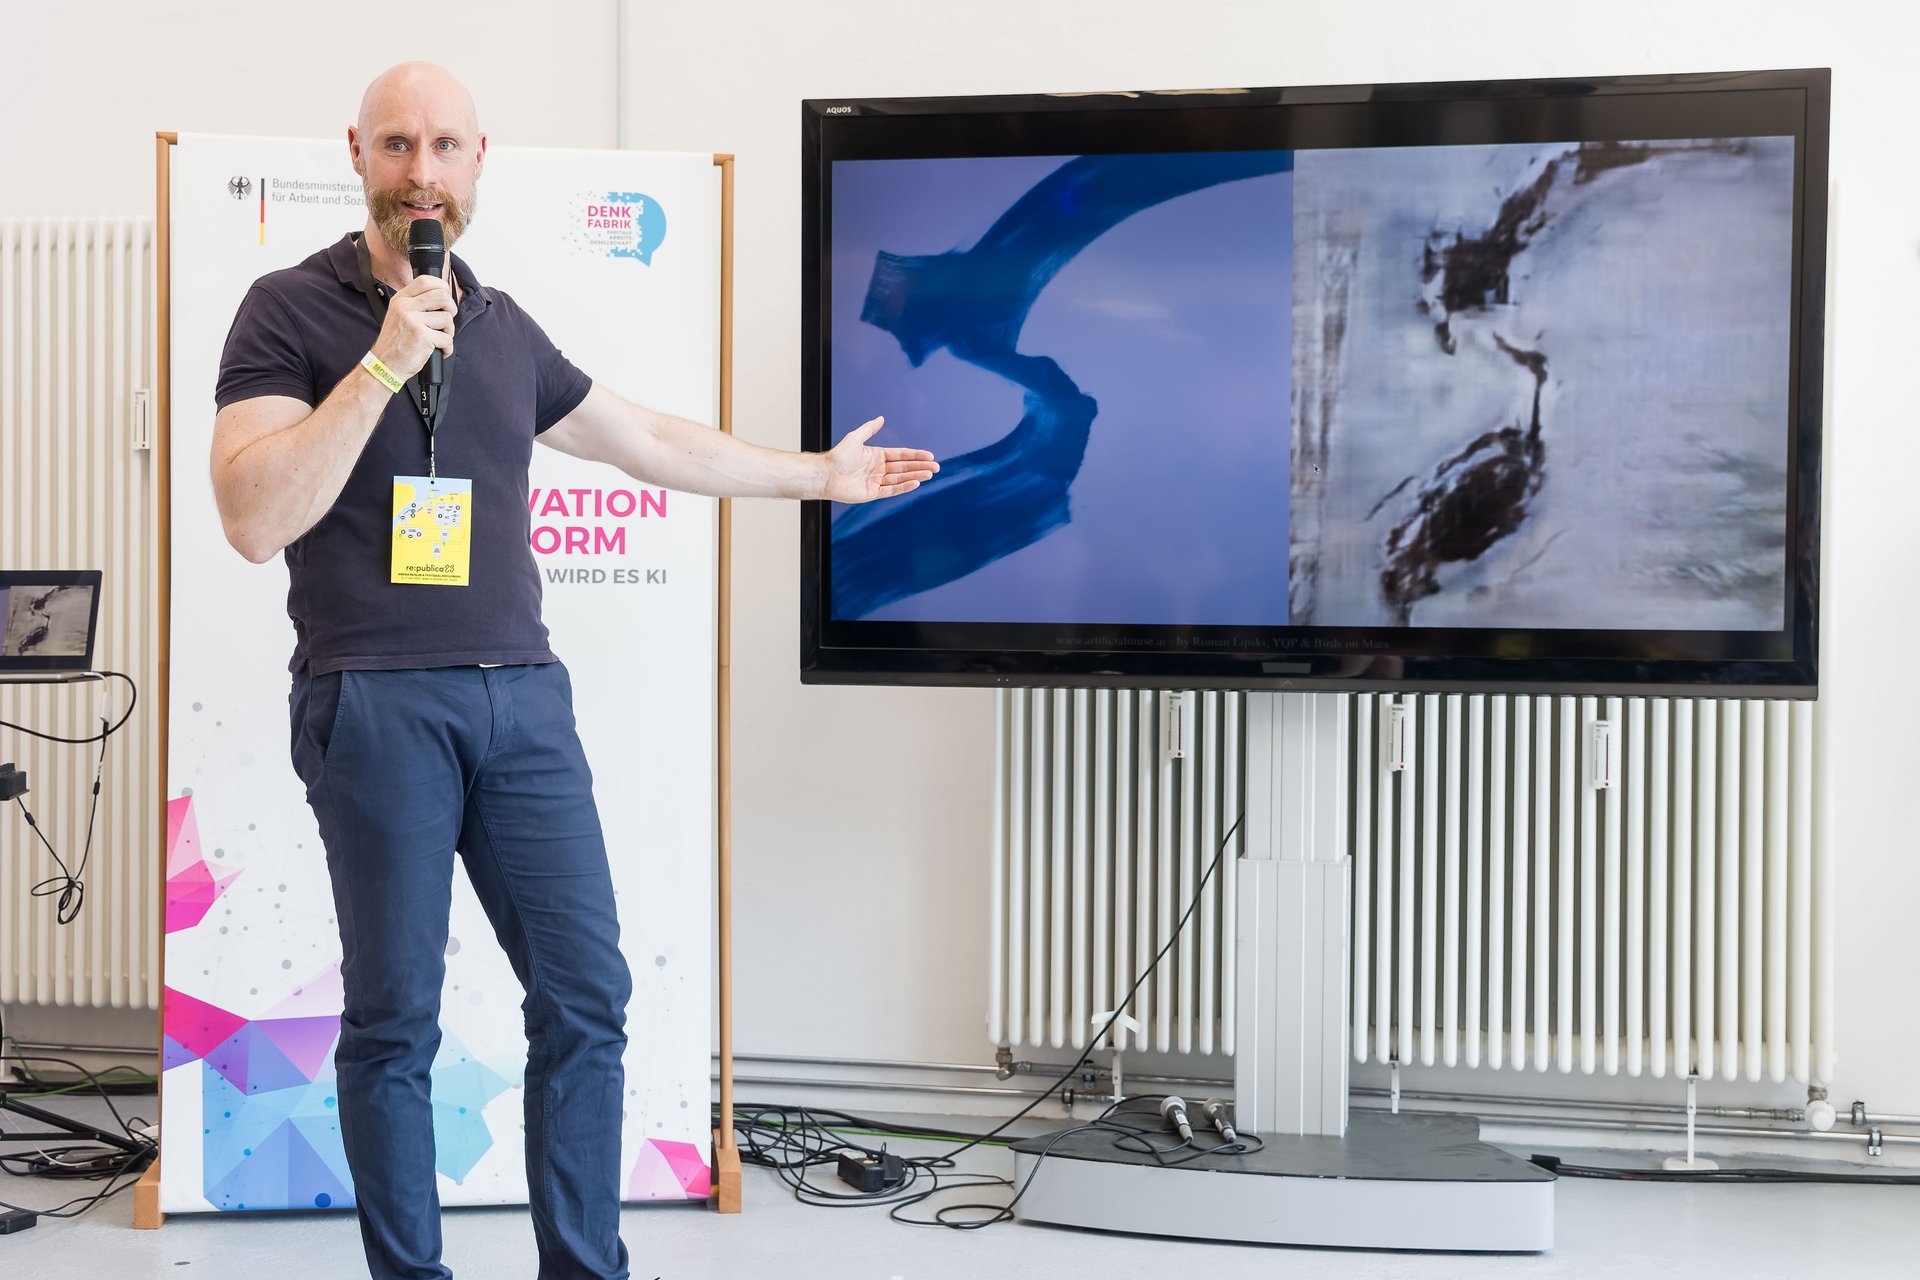 Der Künstler Roman Lipski zeigt auf seine Bilder, welche auf einem Bildschirm gezeigt werden. Er hält ein Mikrofon in der Hand und steht vor einem Plakat der Denkfabrik.